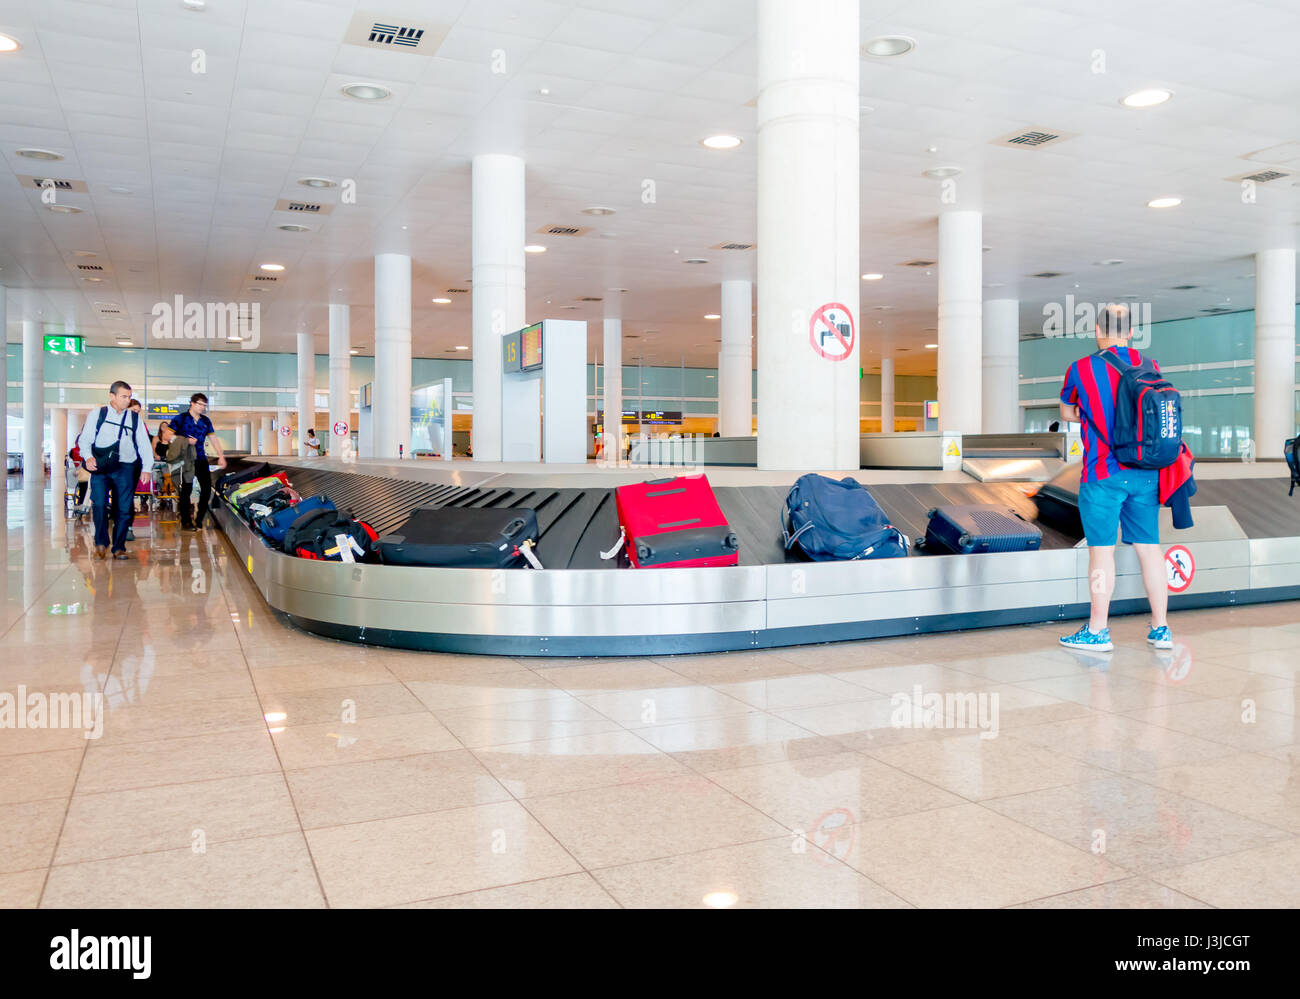 Barcellona, Spagna - 8 agosto, 2015: Nastro trasportatore per gli arrivi con bagagli valigie e persone intorno in attesa all'interno della grande e luminosa sala colorata ad aria Foto Stock